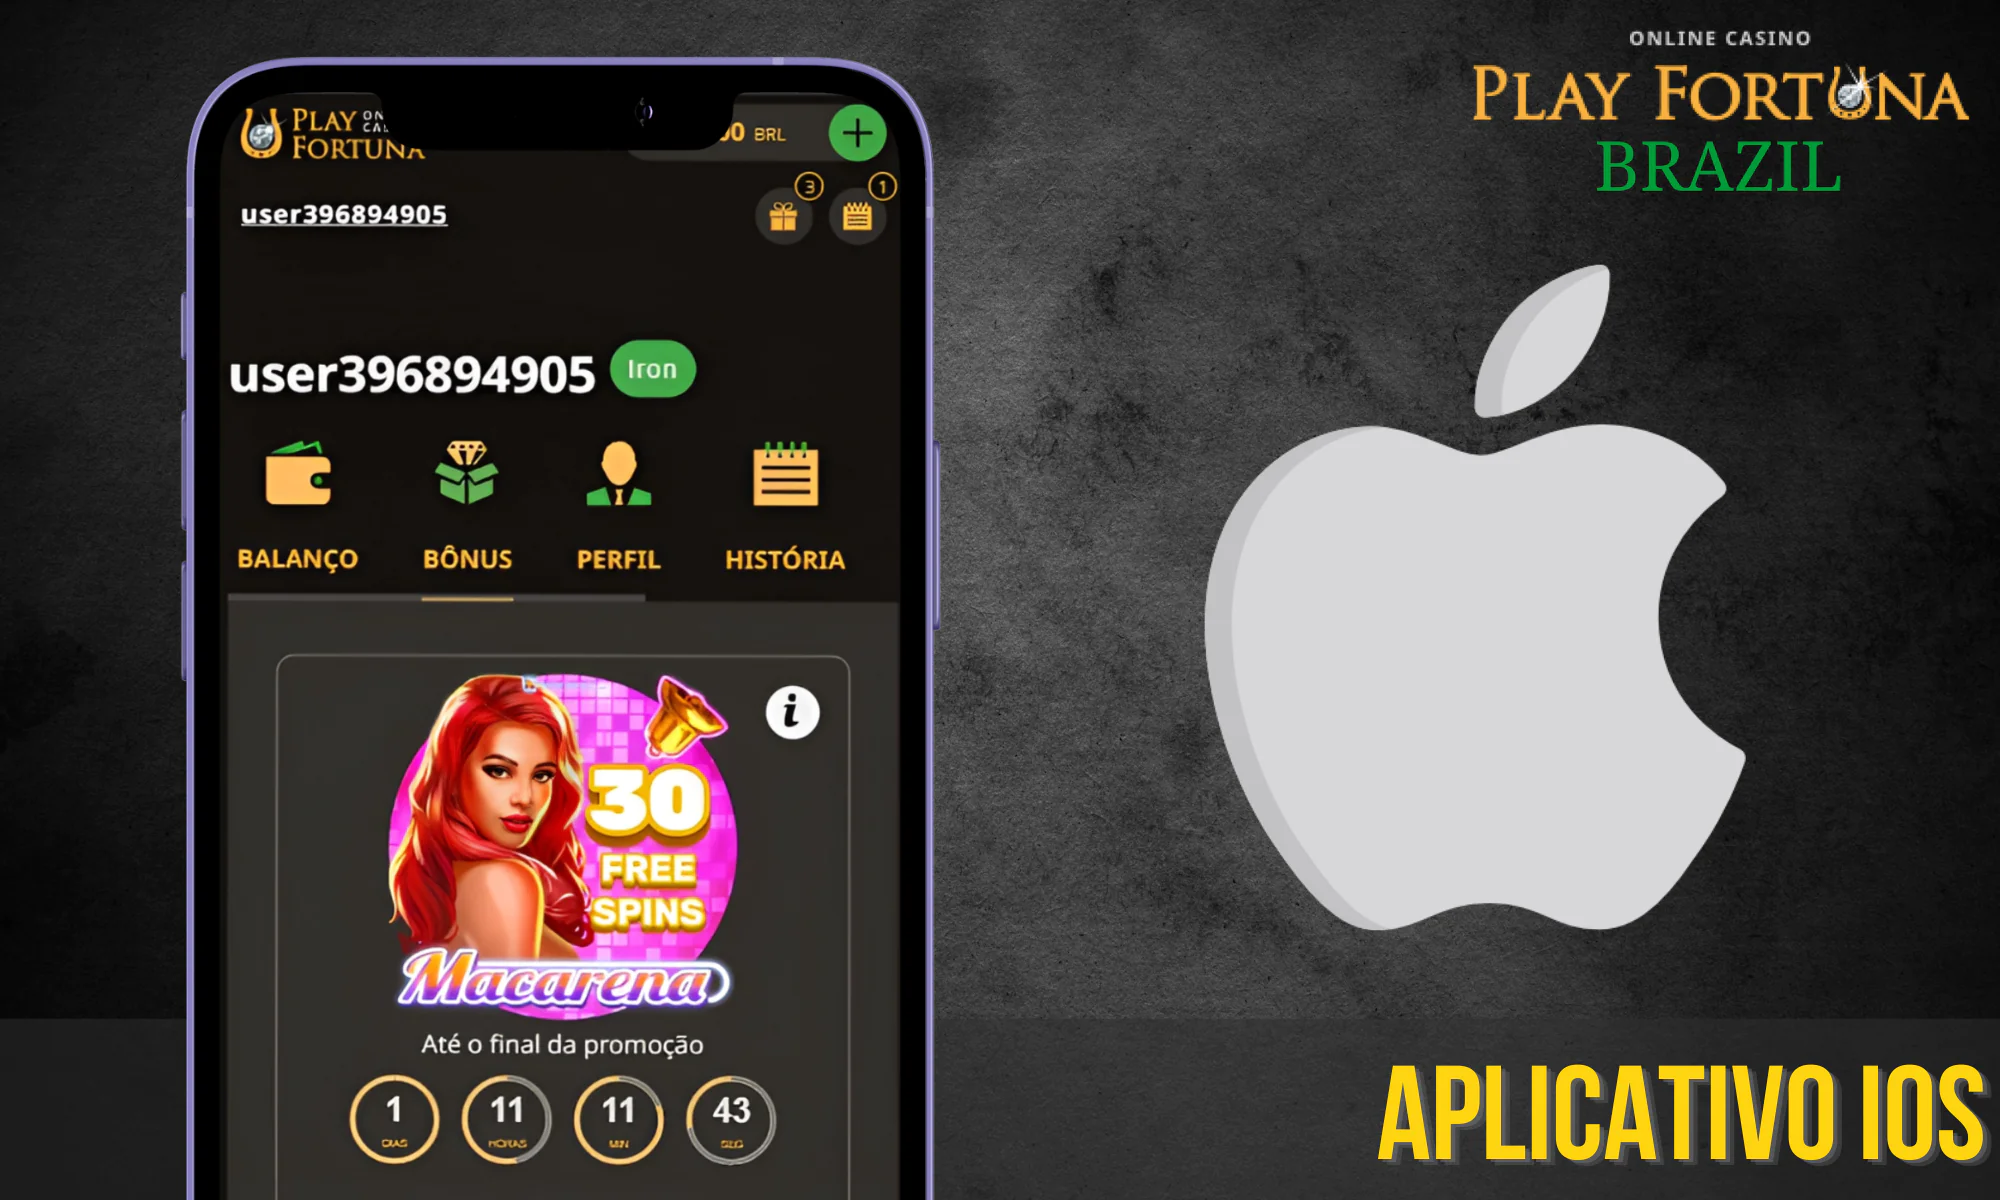 Os usuários de dispositivos móveis no iOS também têm acesso ao aplicativo Play Fortuna